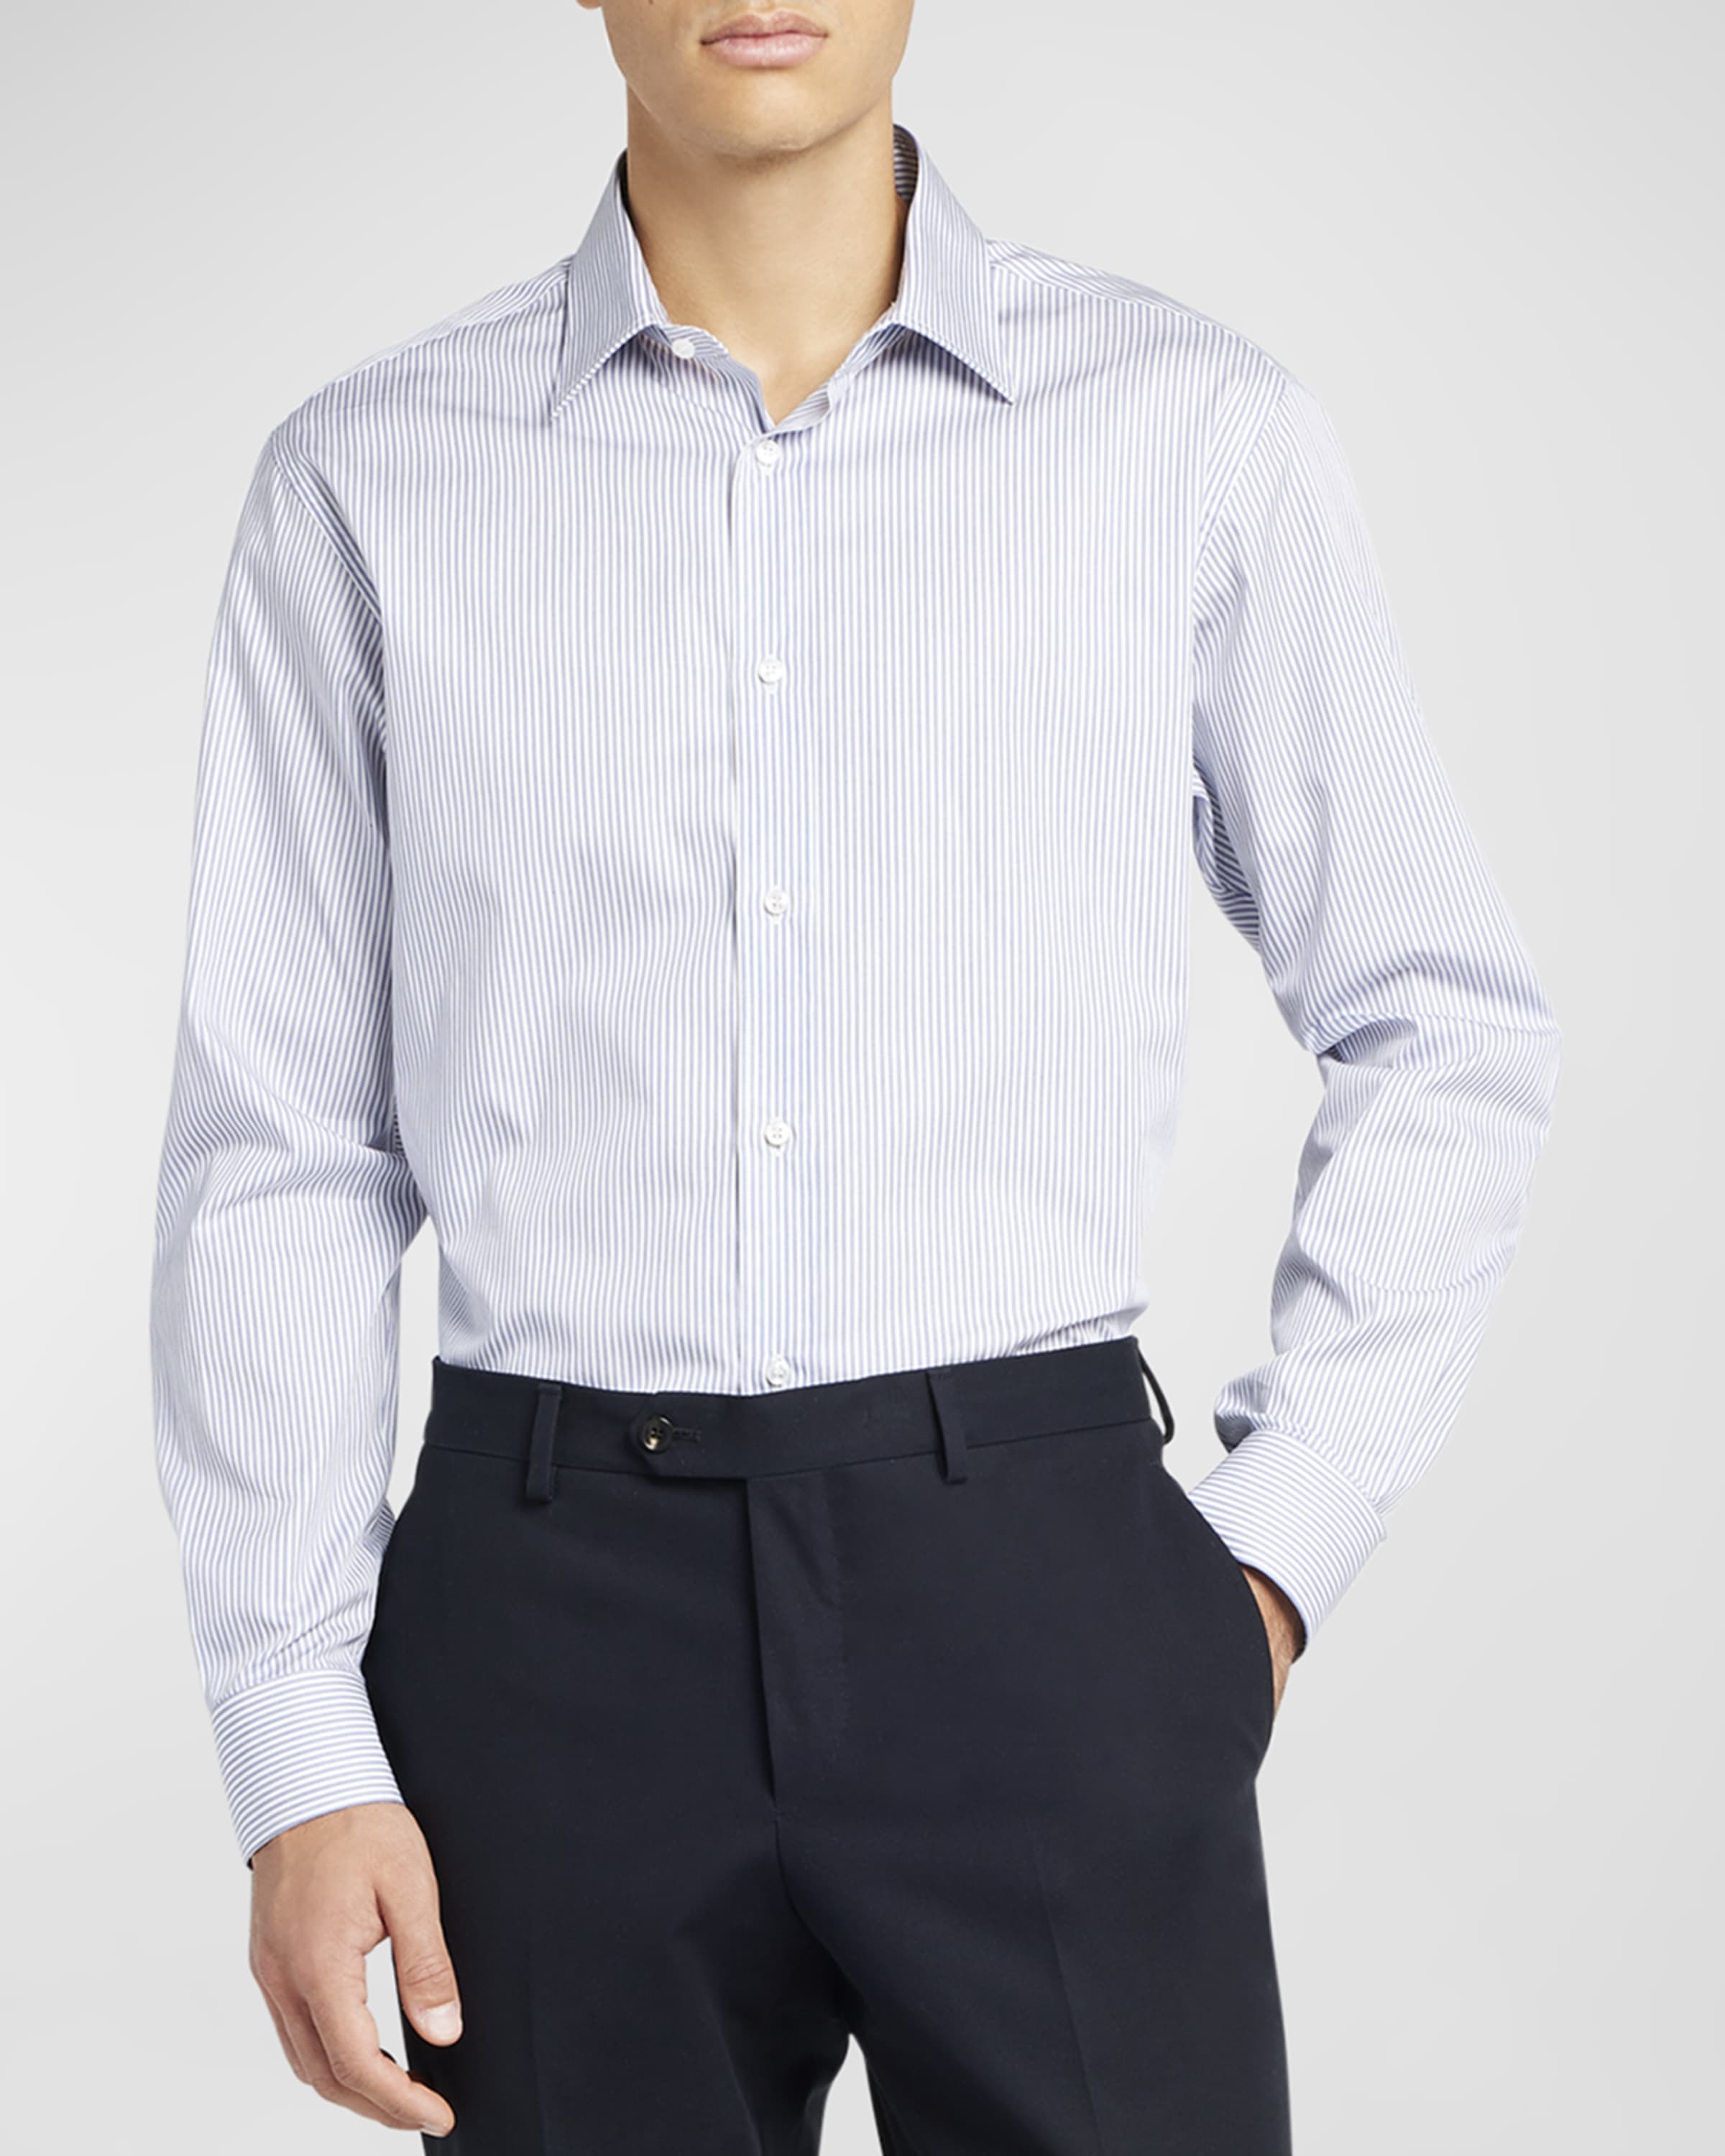 Men's Cotton Micro-Stripe Dress Shirt - 2